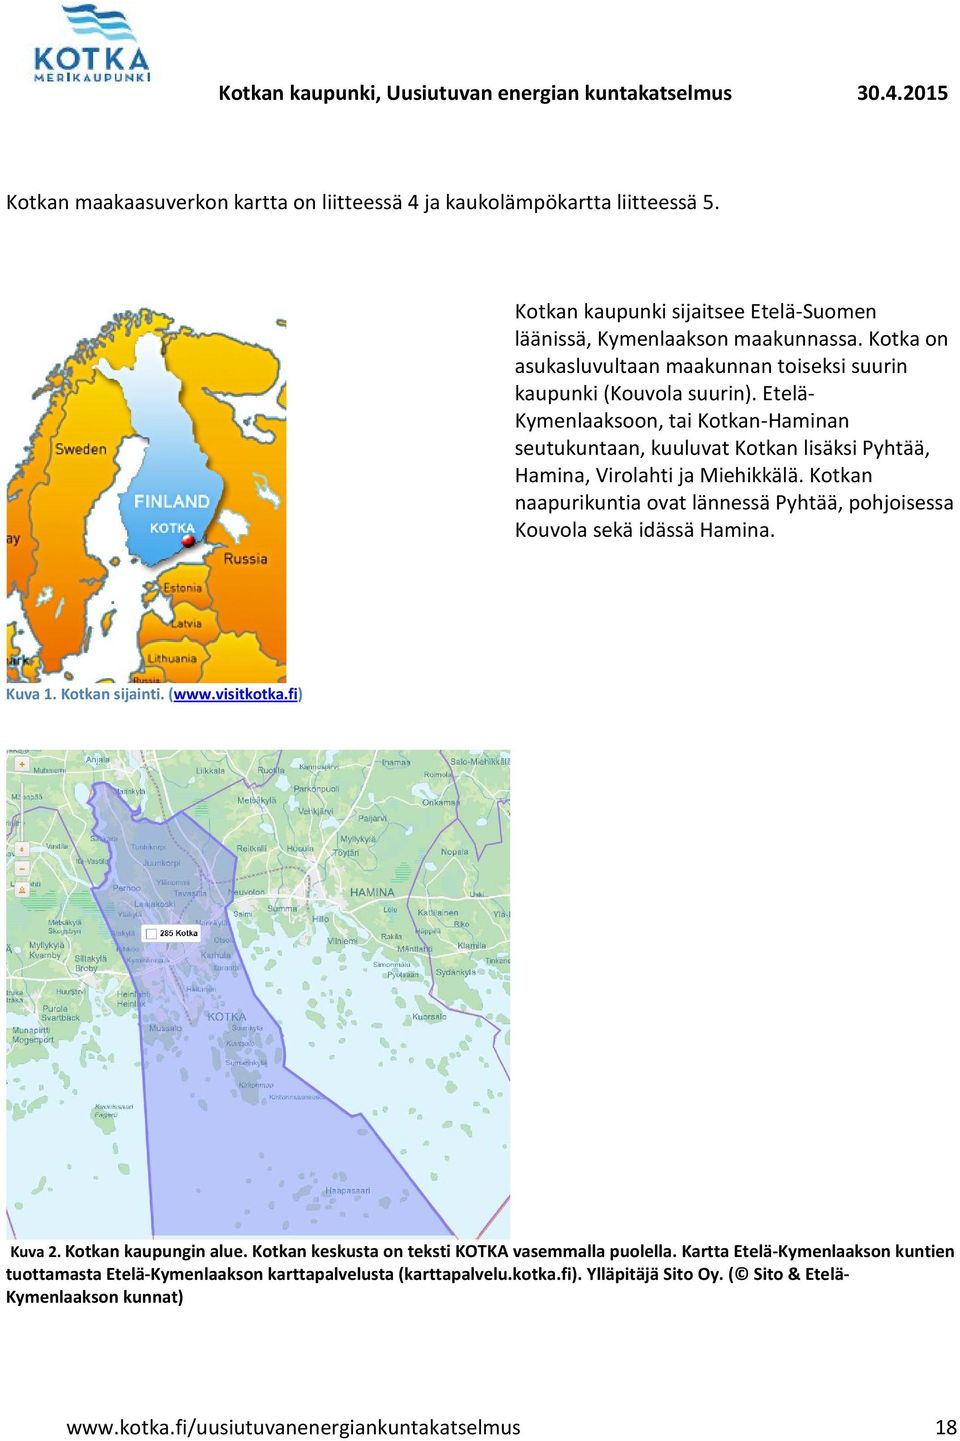 Etelä- Kymenlaaksoon, tai Kotkan-Haminan seutukuntaan, kuuluvat Kotkan lisäksi Pyhtää, Hamina, Virolahti ja Miehikkälä.